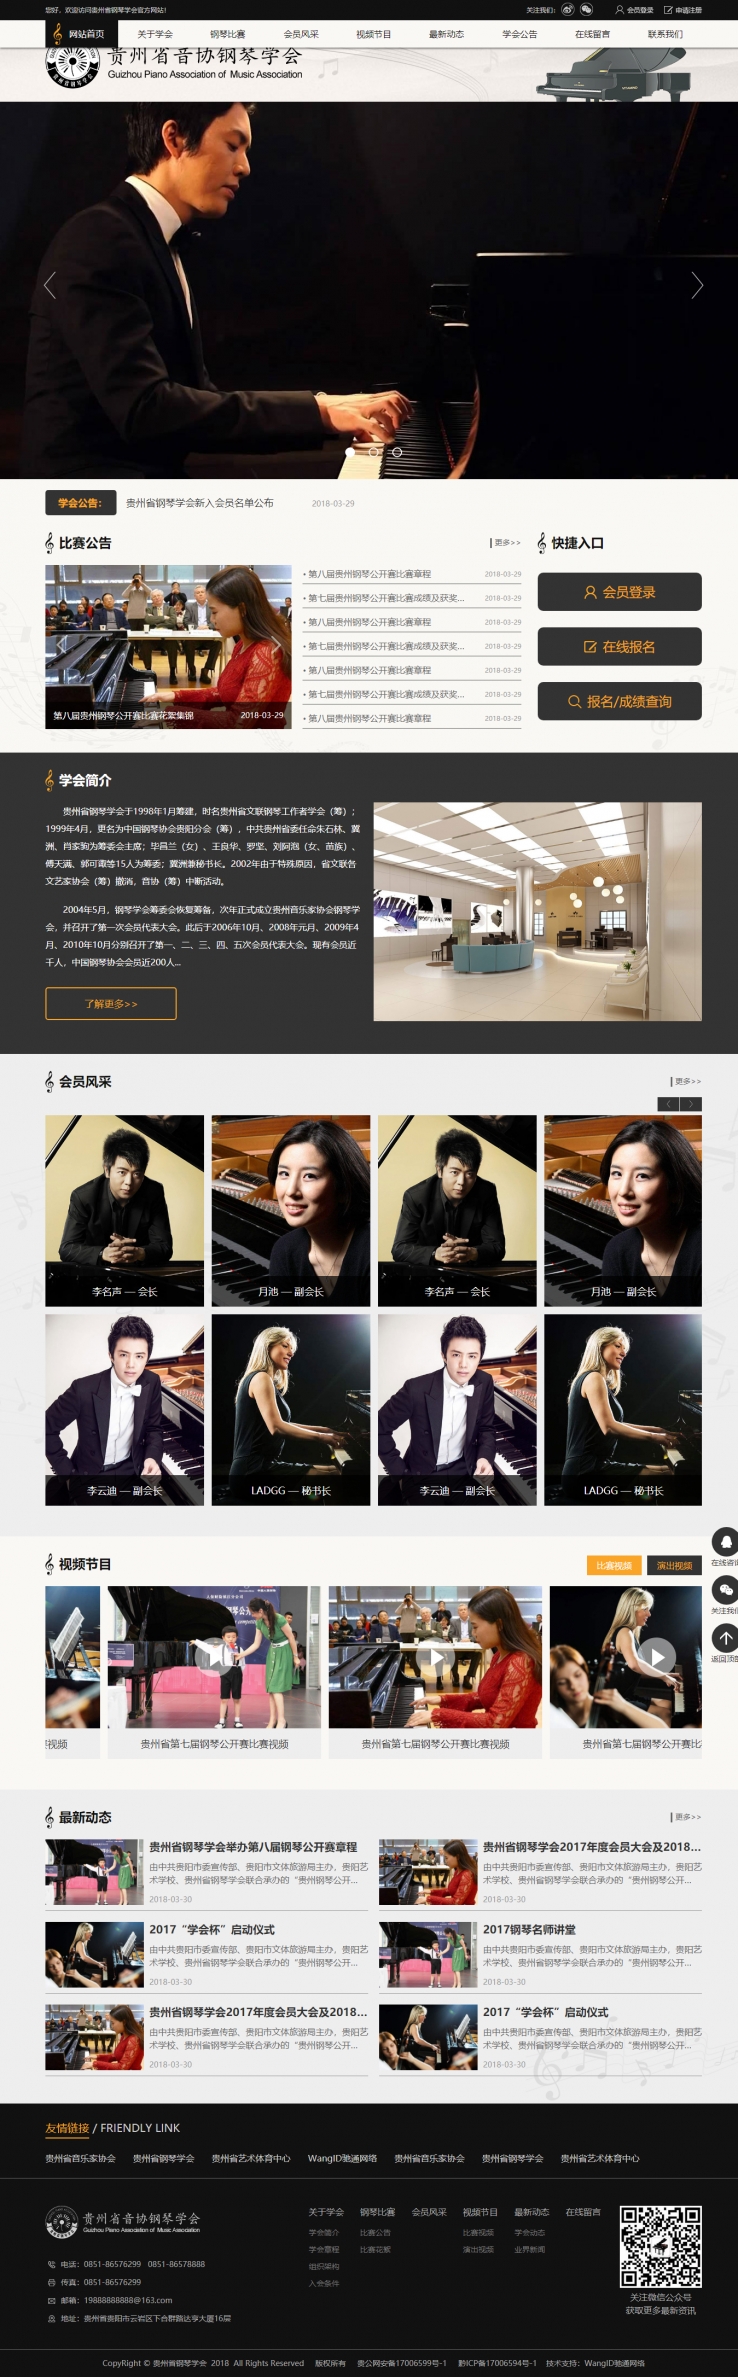 黑色简洁风格的音协钢琴企业网站源码下载